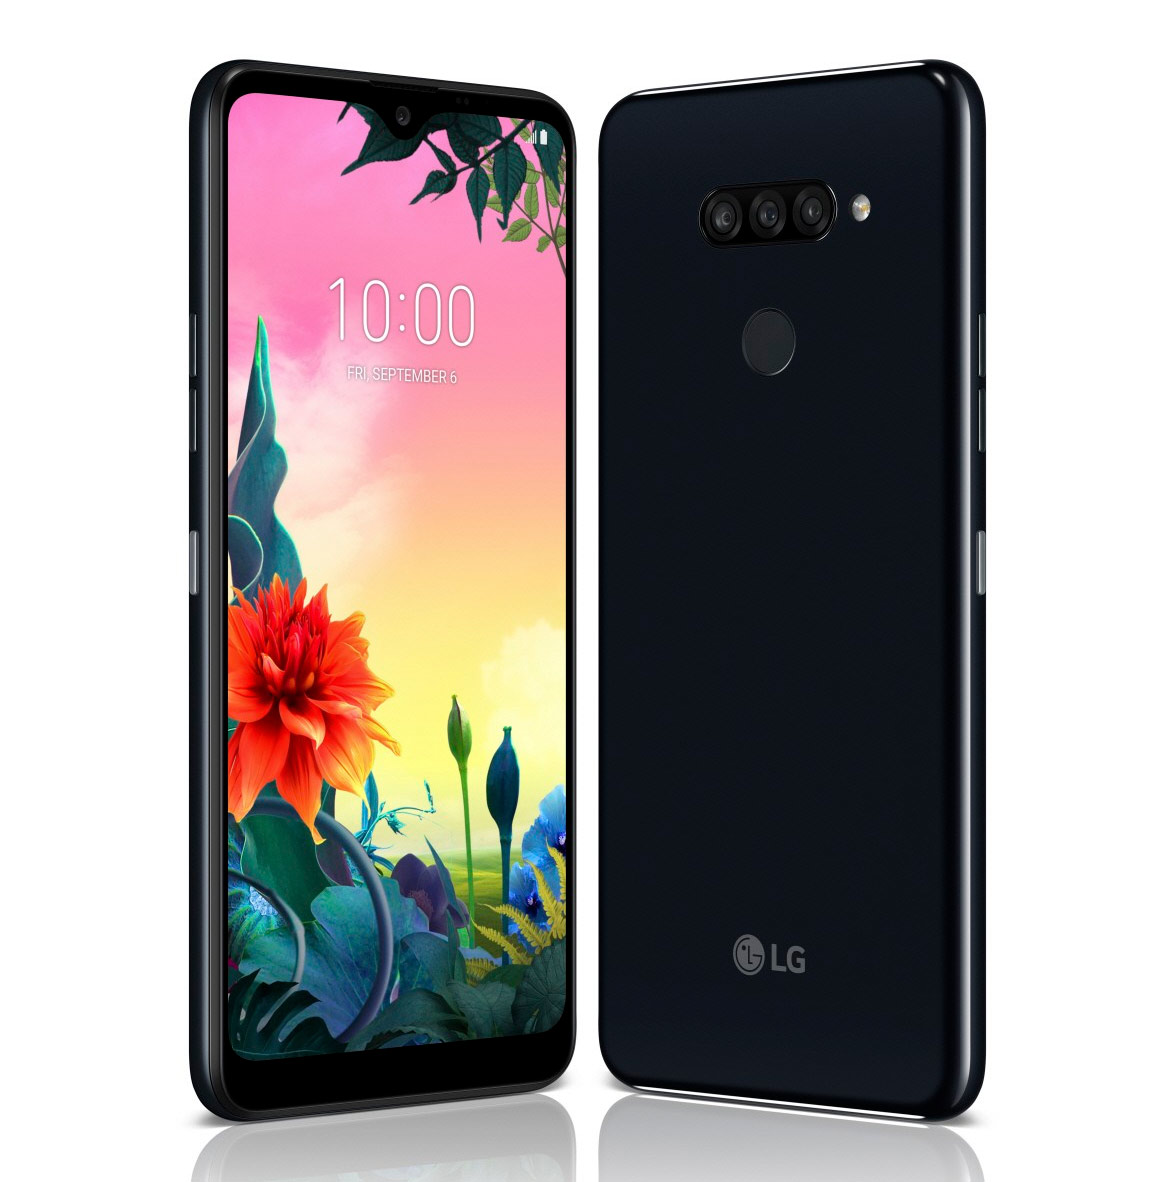 تعلن LG عن LG K40 و LG K50s بأسلوب الخطوط Galaxy